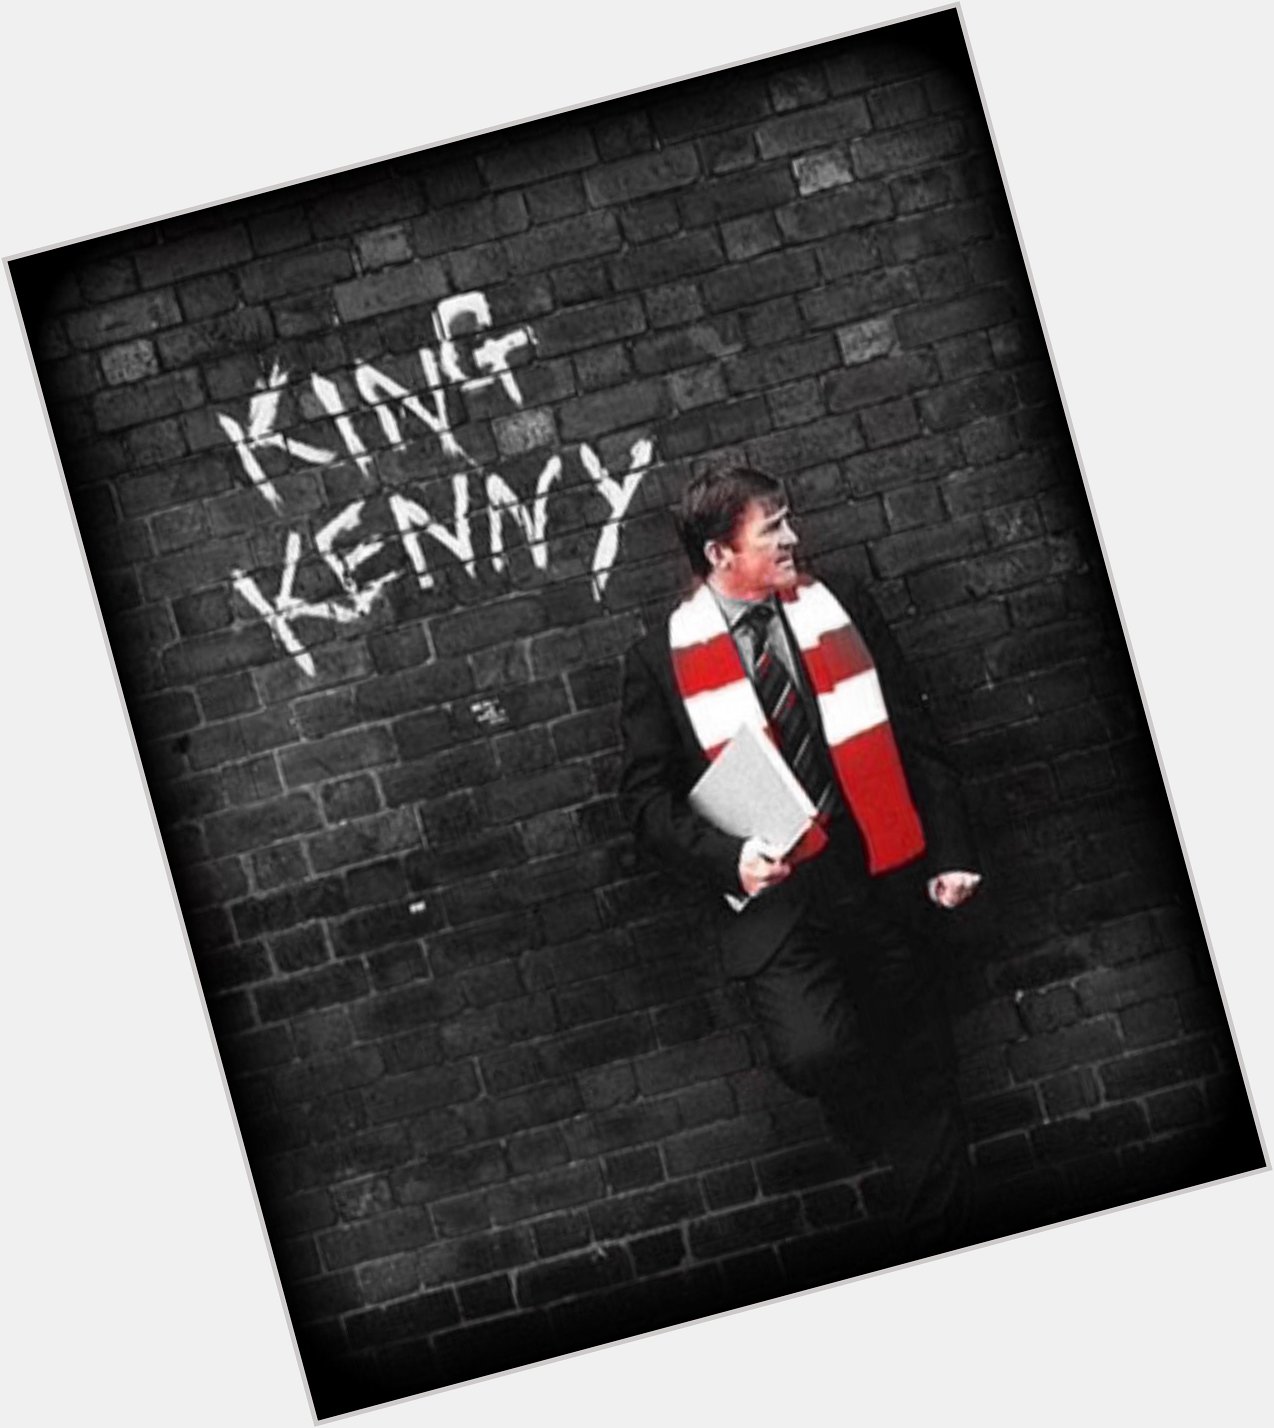 Happy Birthday King Kenny Dalglish!!!    